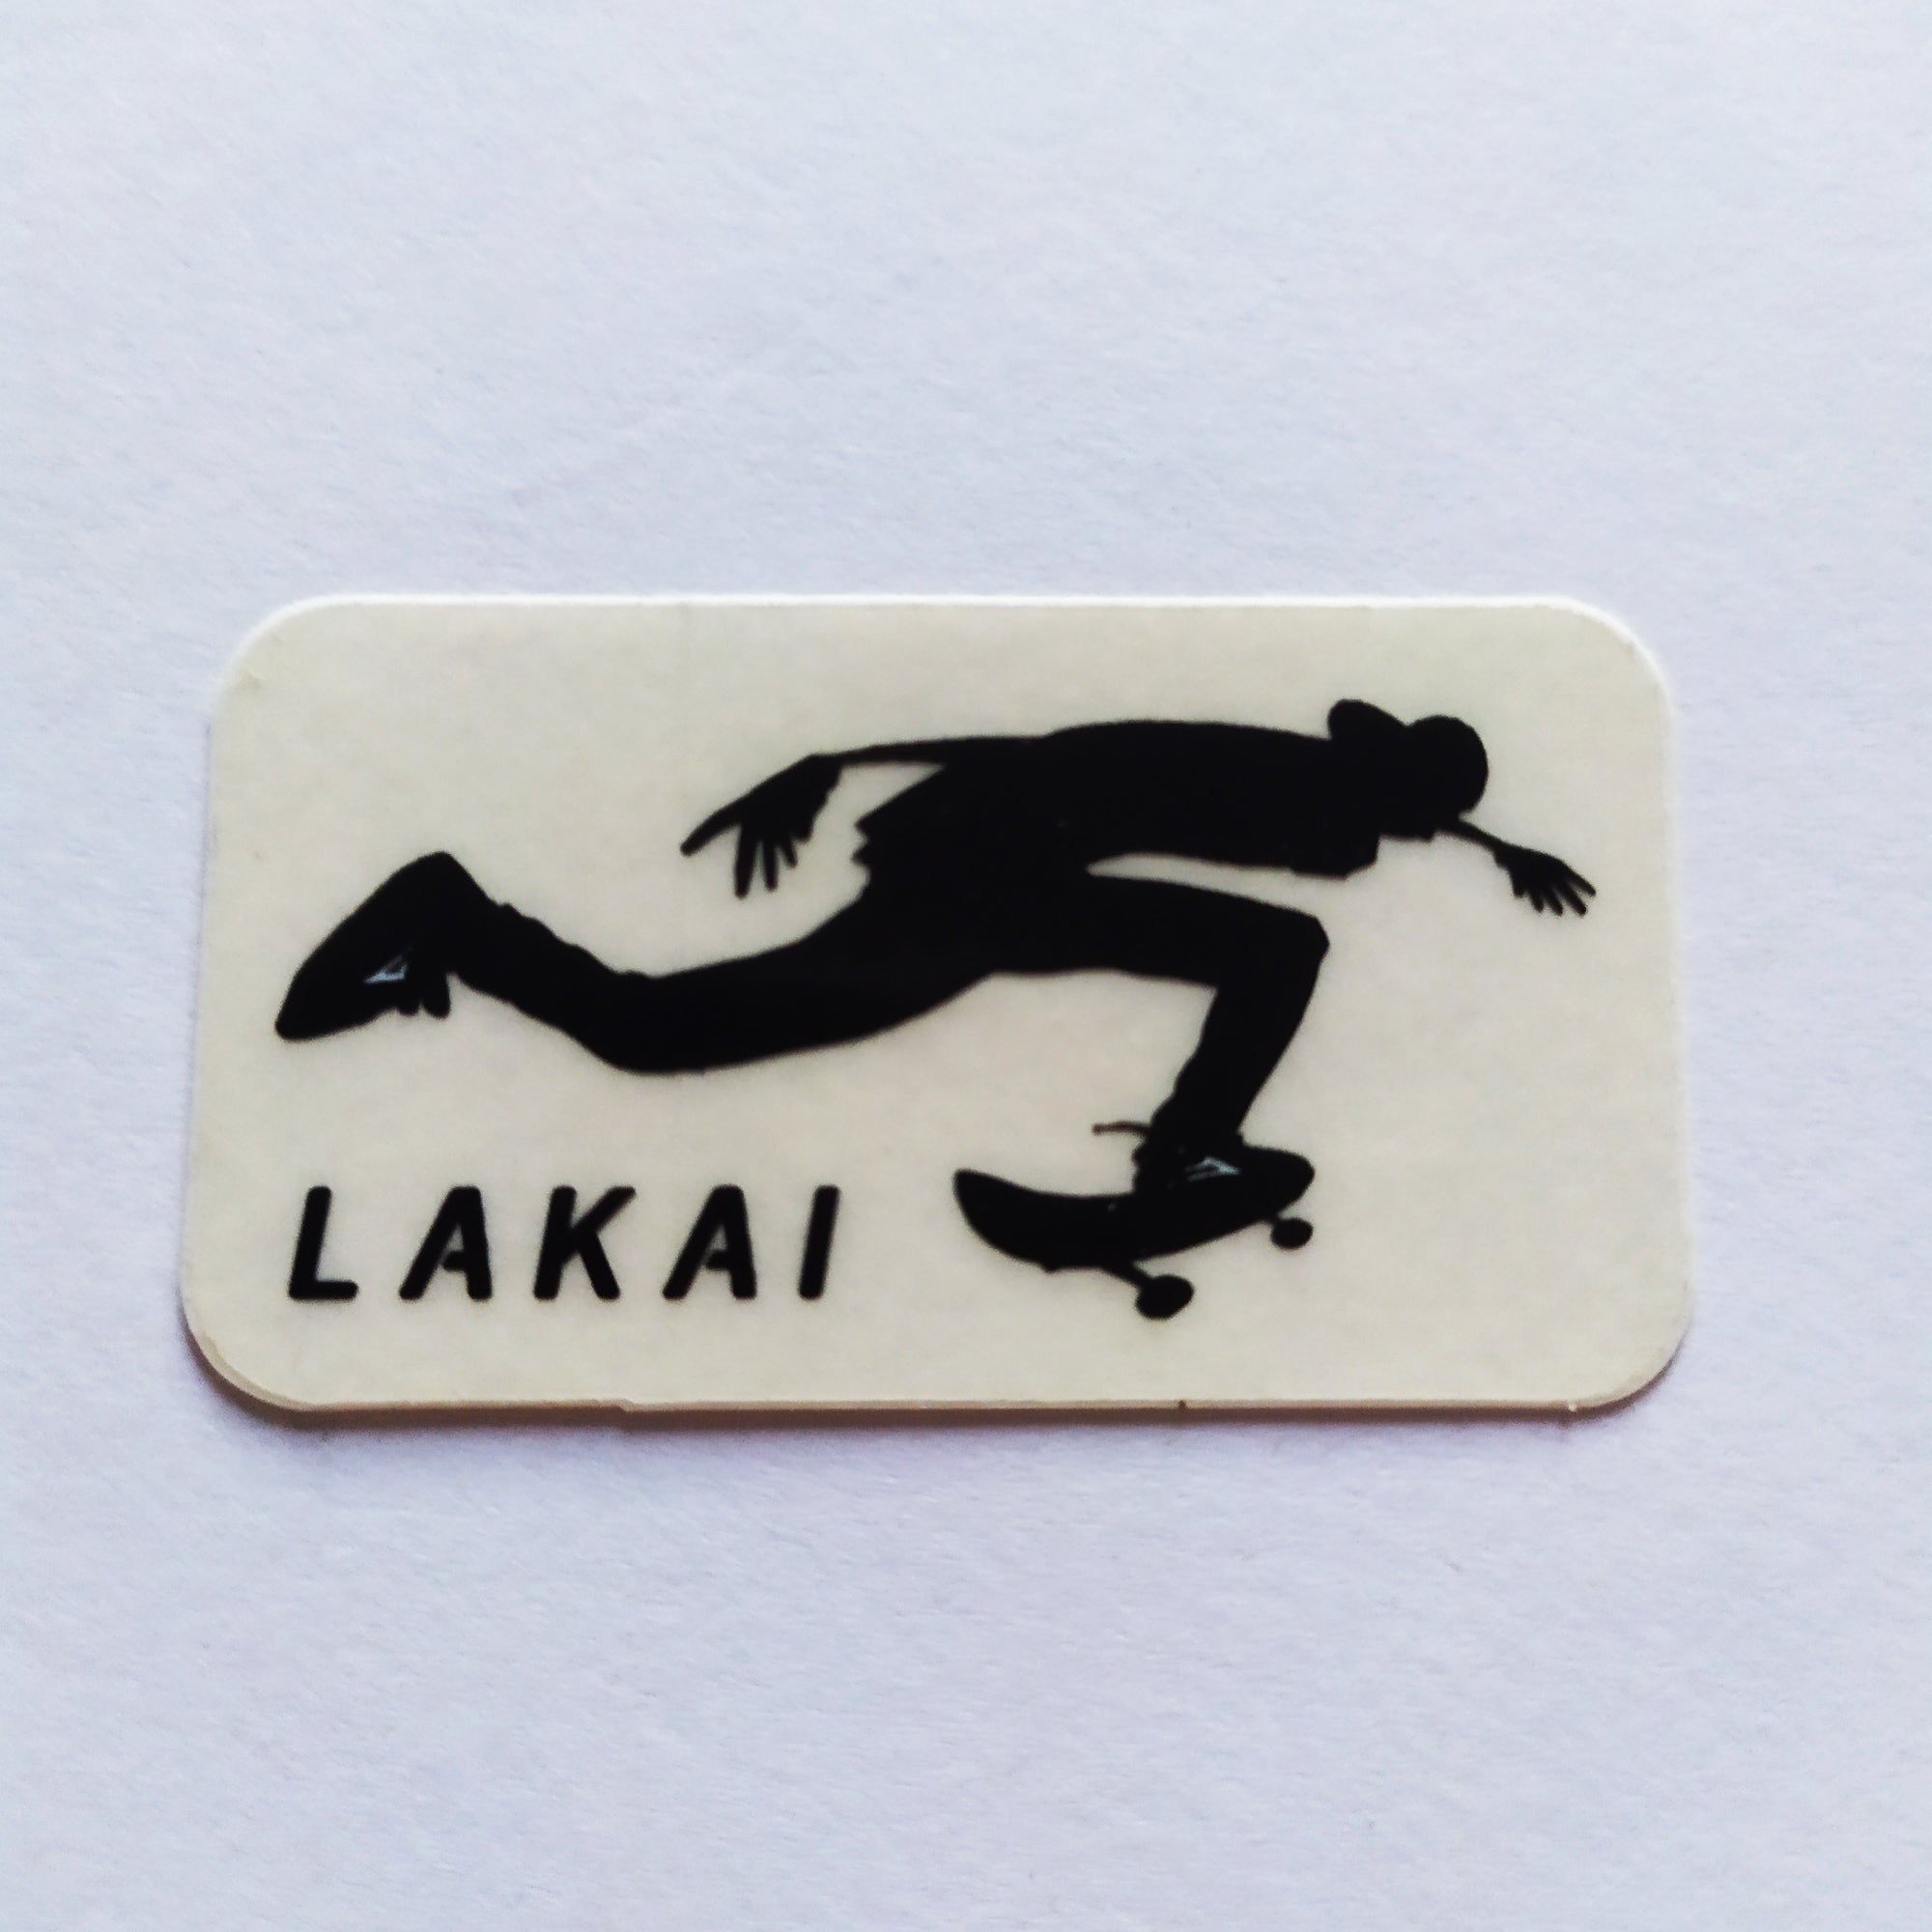 Lakai Skate Shoes Skateboard Sticker - "Push"